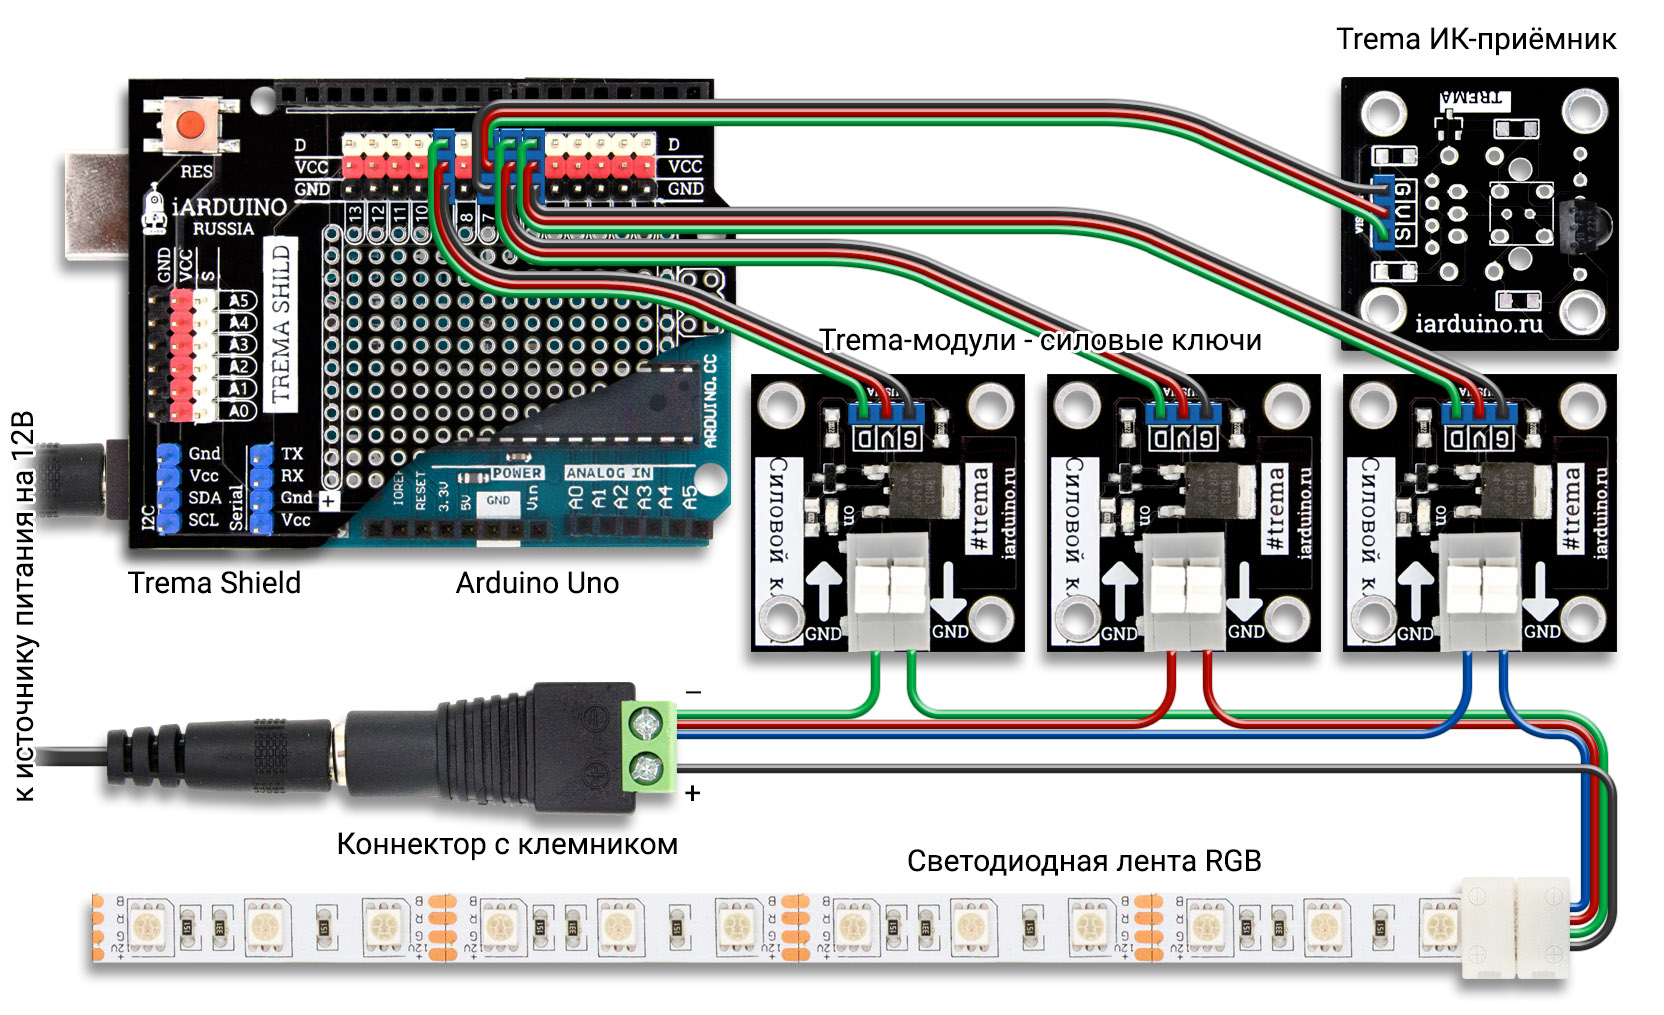 Схема дистанционного управления RGB лентой с ИК-пульта